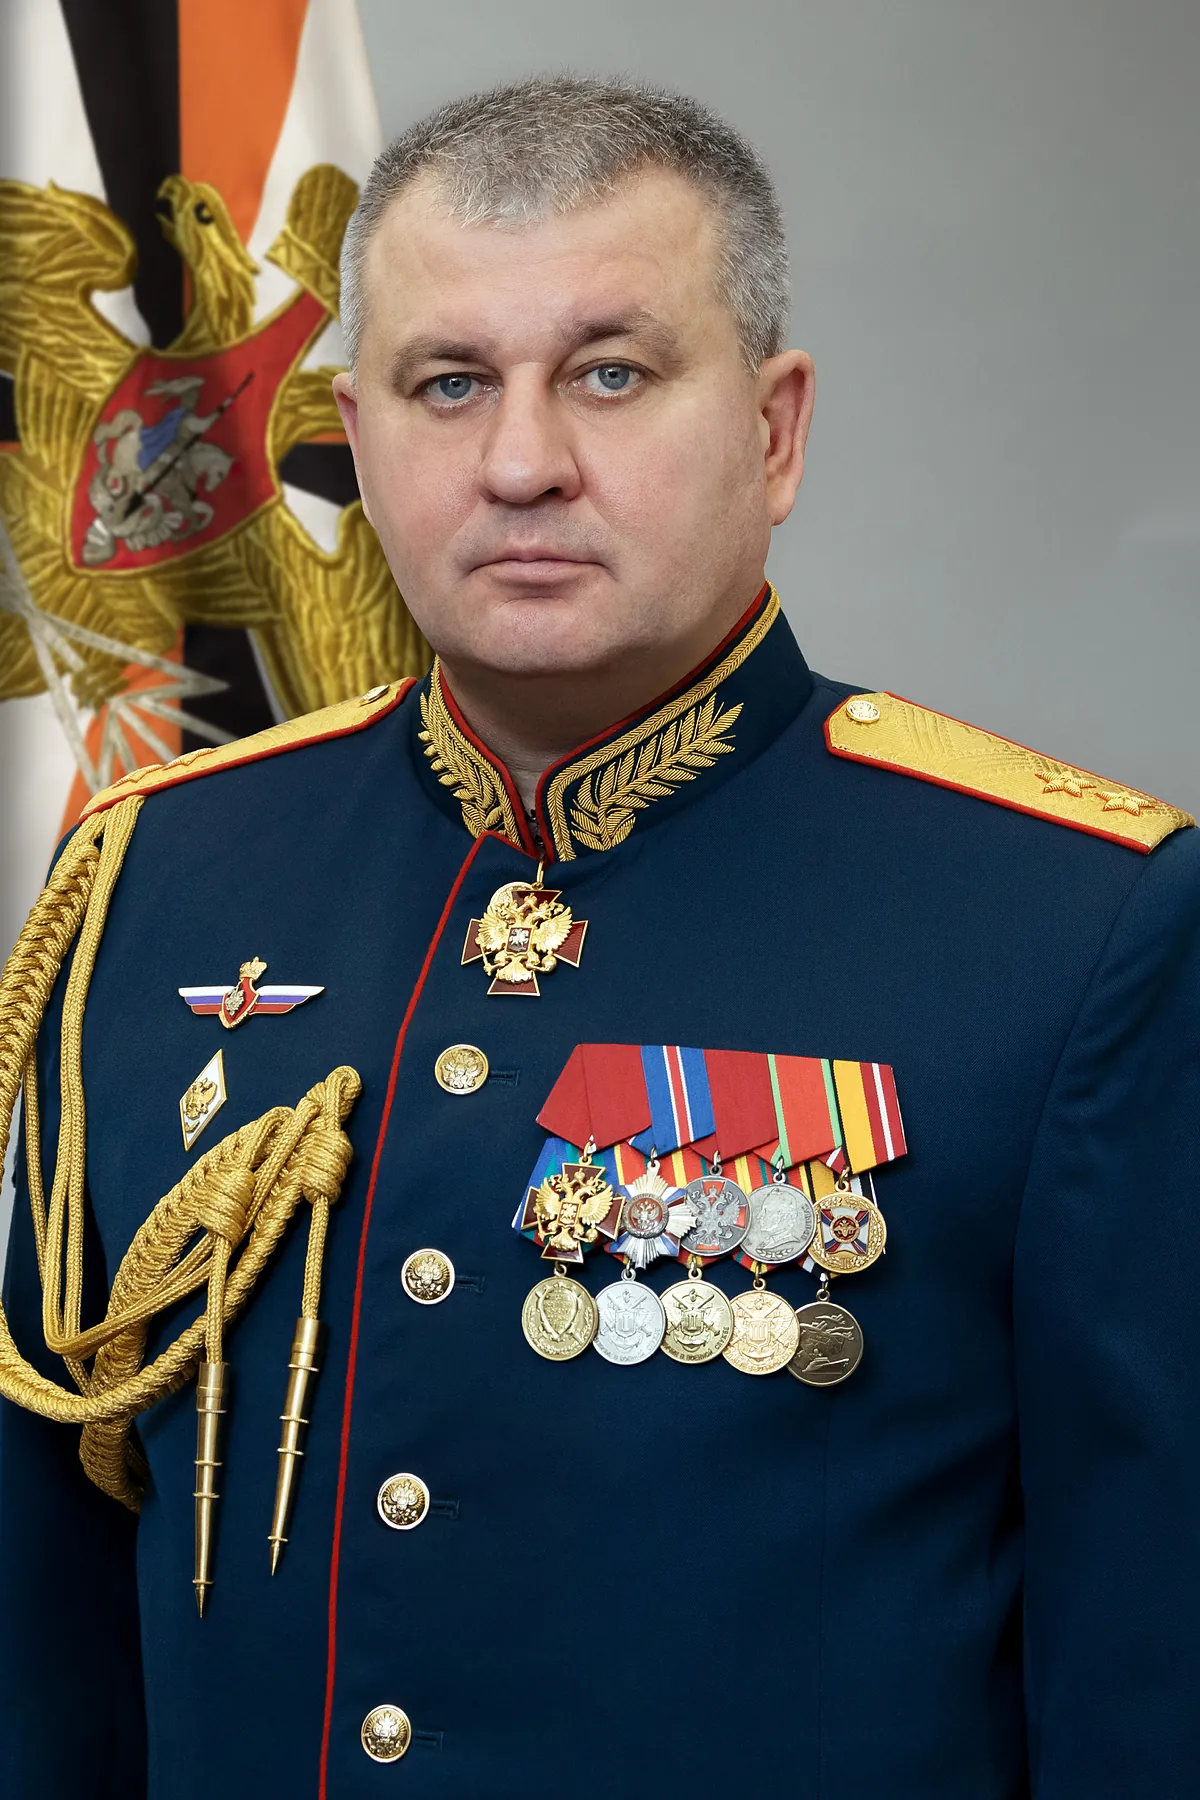 El condecorado corrupto, cuarto mando militar ruso arrestado en un mes